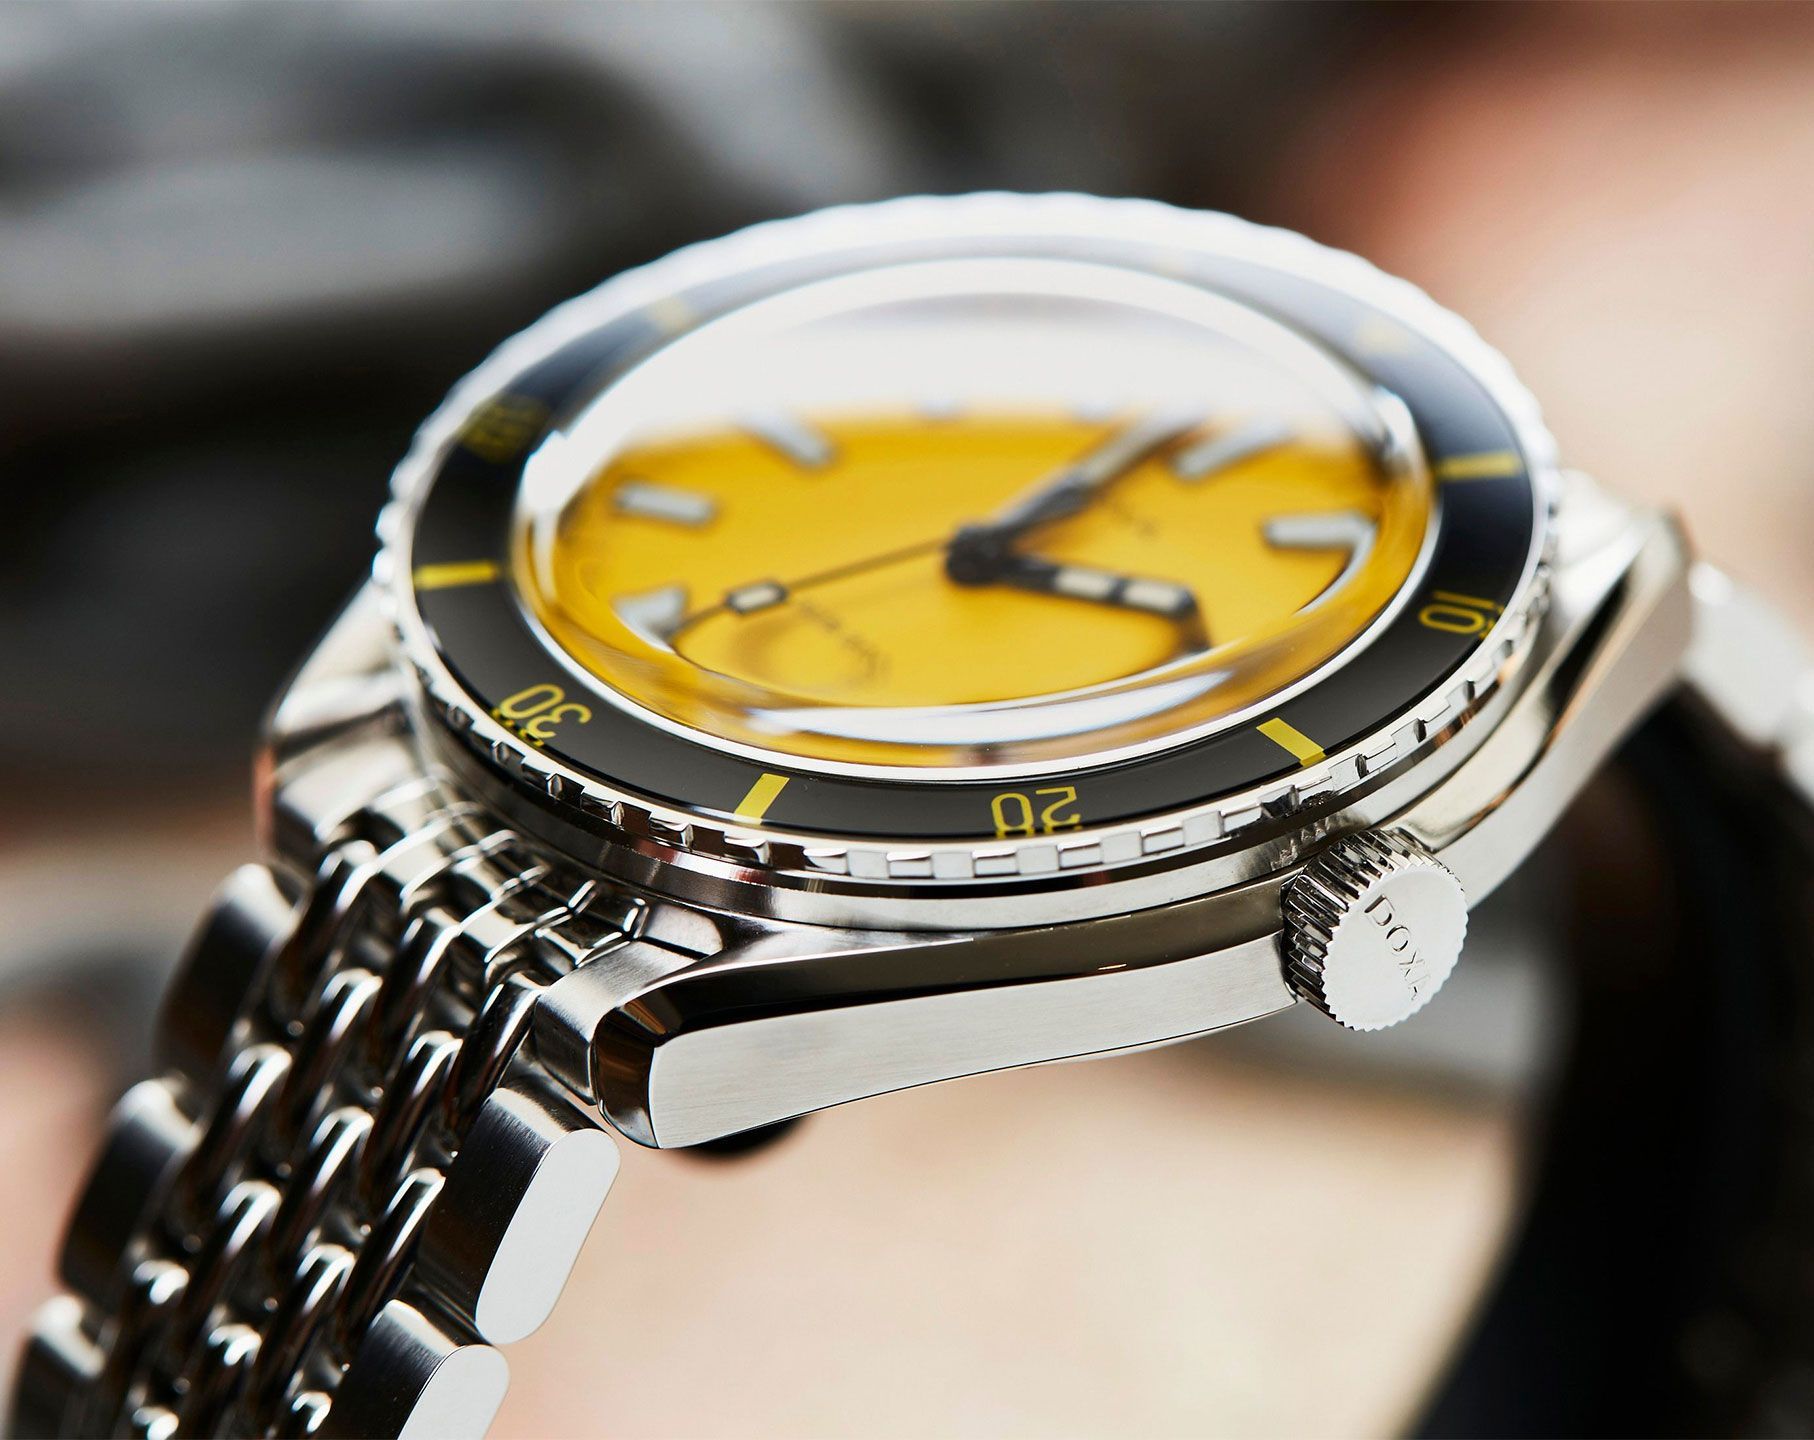 Doxa Divingstar 42 mm Watch in Yellow Dial For Men - 7